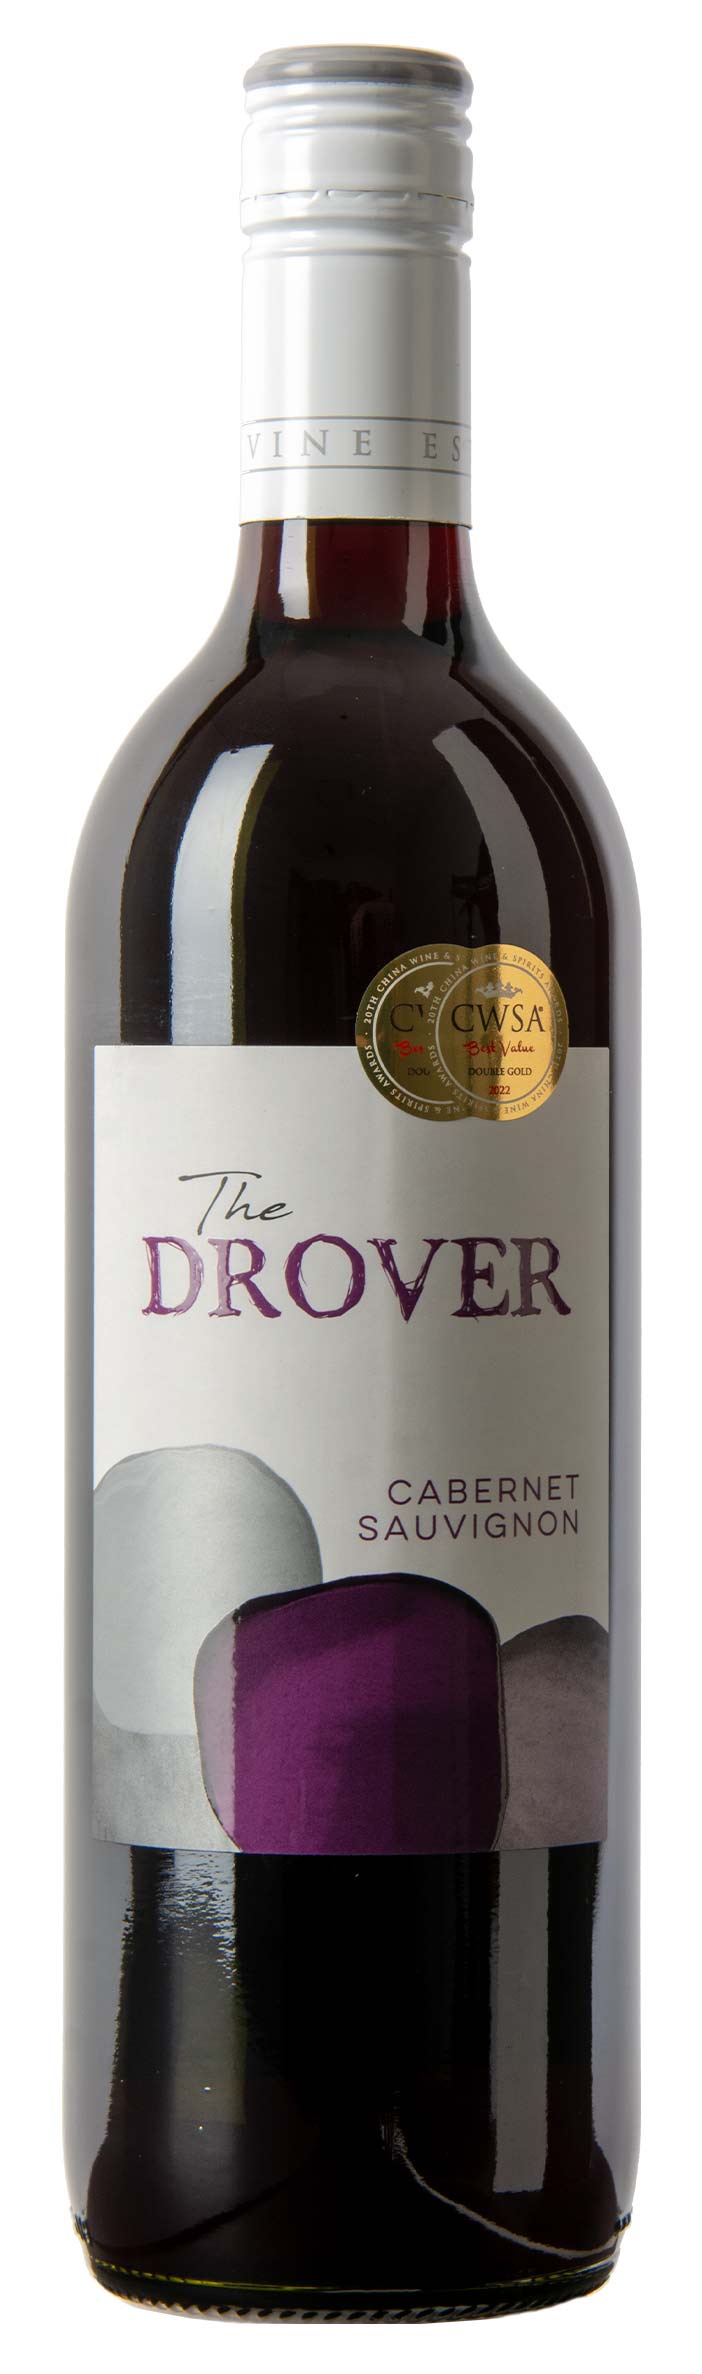 The Drover Cabernet Sauvignon